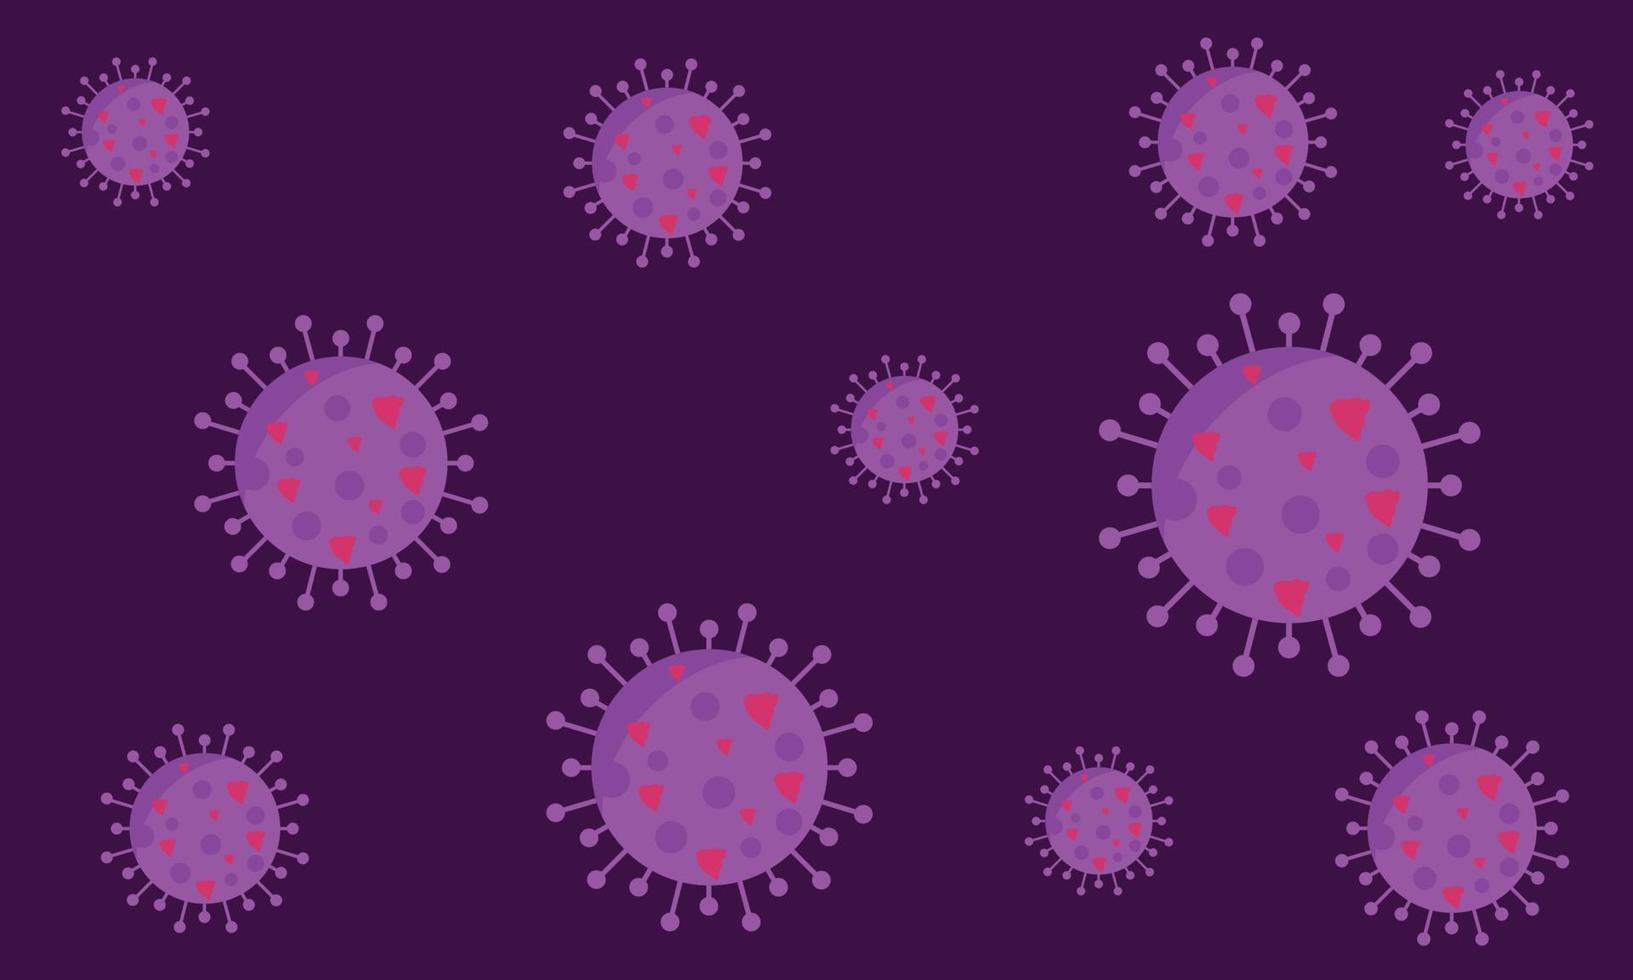 Abbildung des lila Virus. Corona-Virus covid-19 mikroskopischer Virus. Omikron-Virus-Vektor vektor